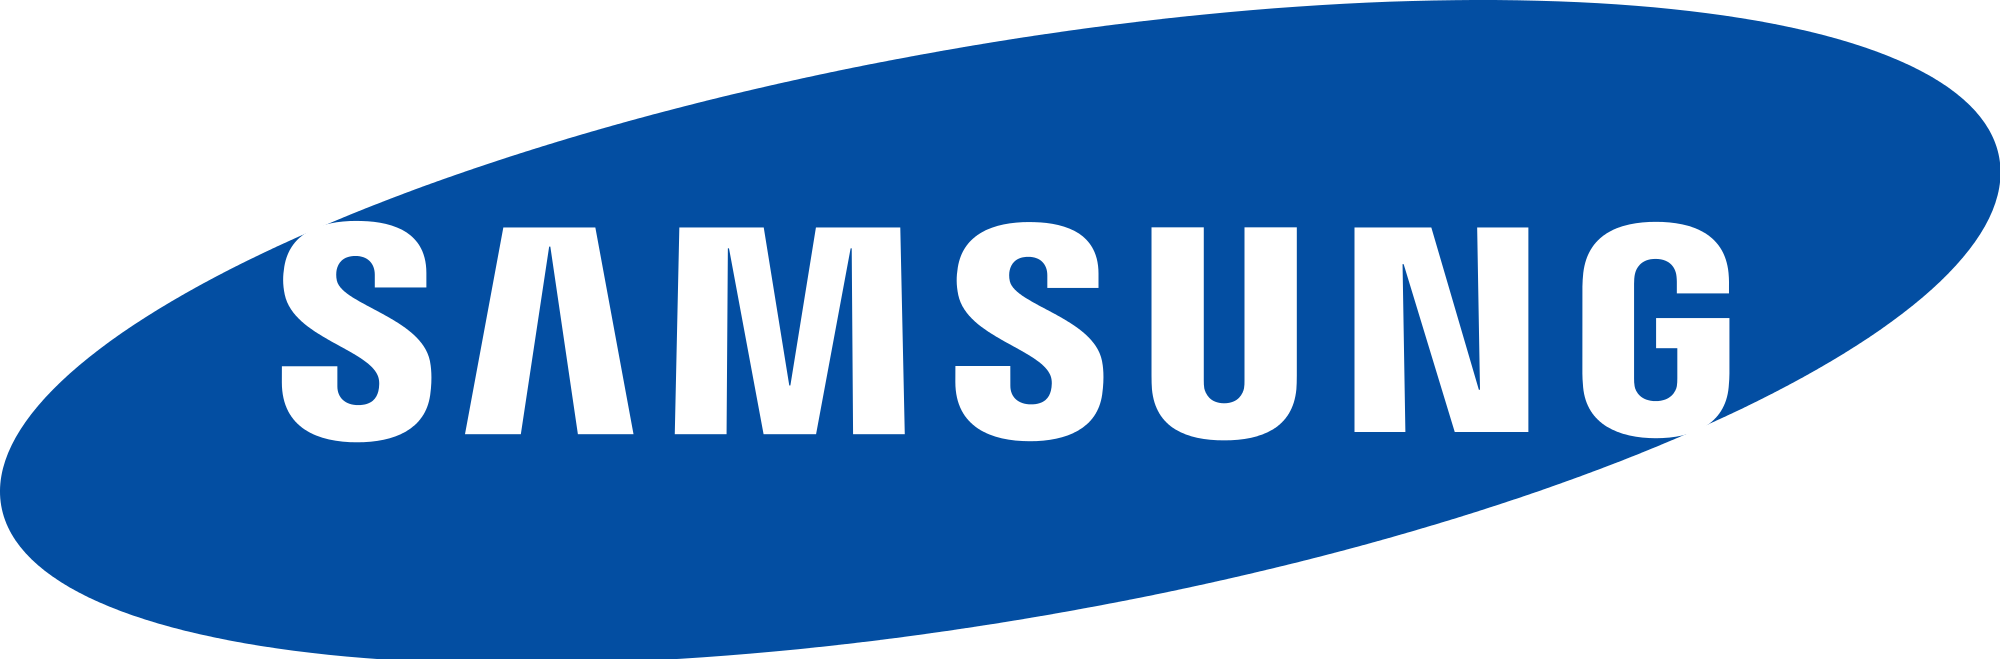 Логотип SAMSUNG